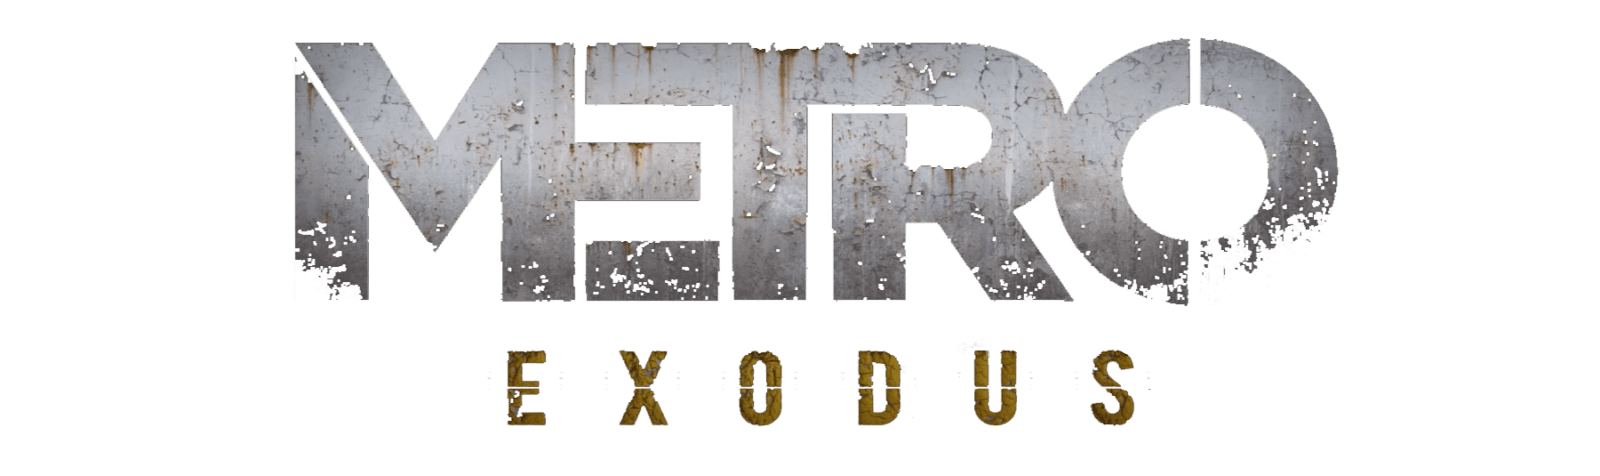 Metro Exodus PNG Image Background